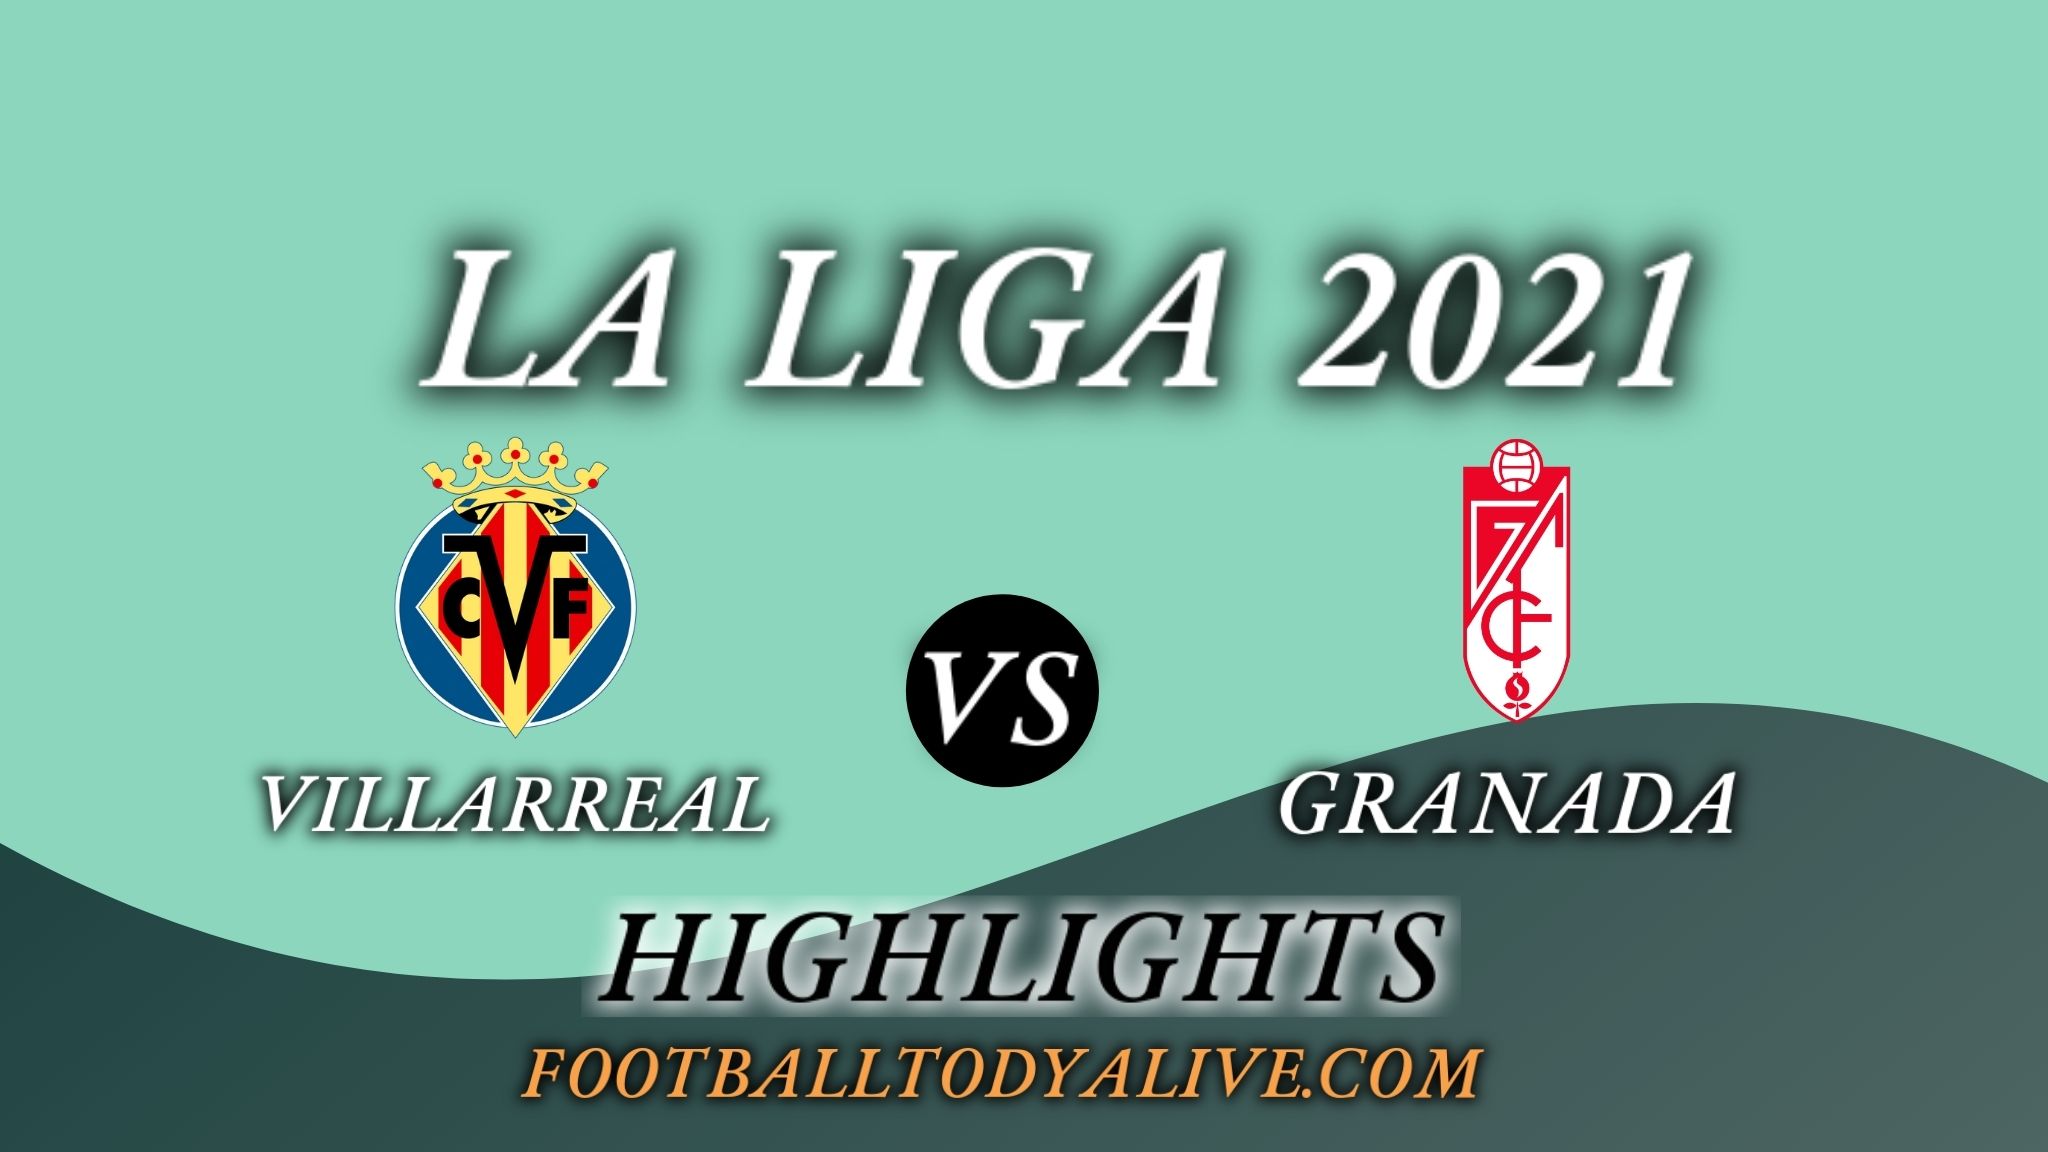 Villarreal Vs Granada Highlights 2021